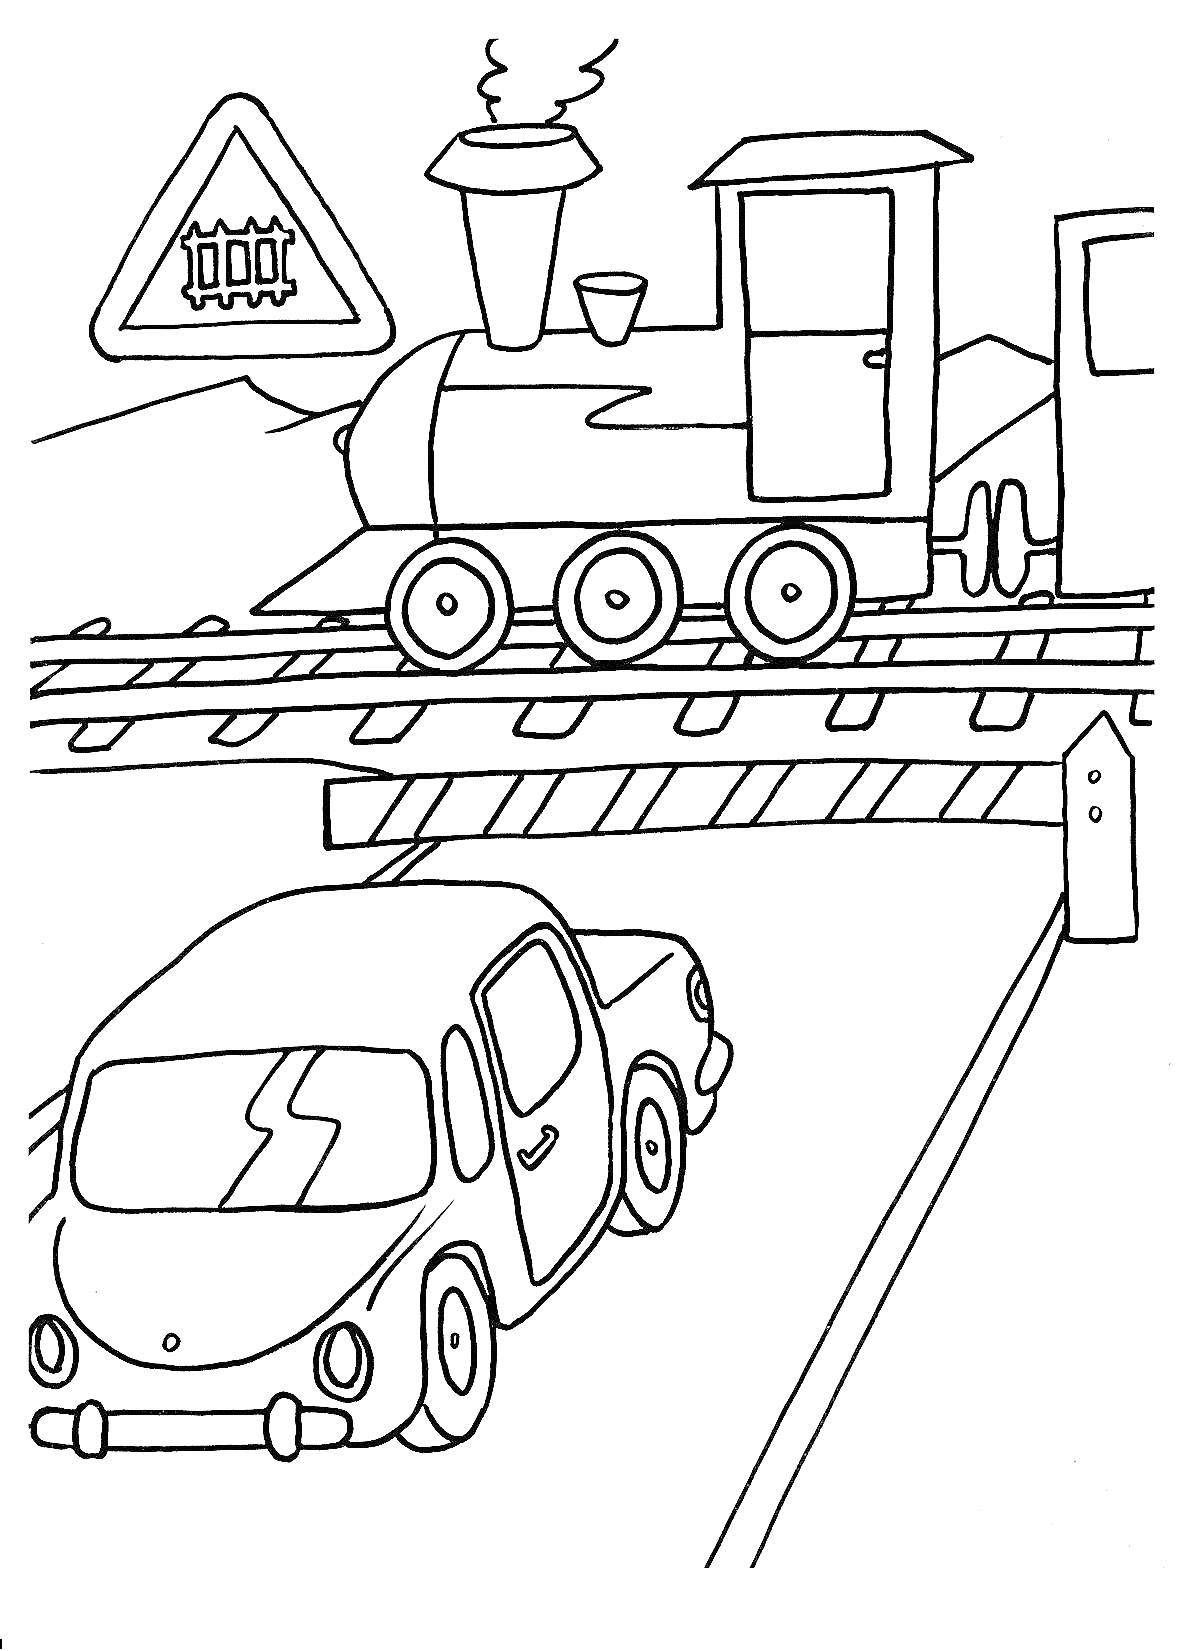 Паровоз, автомобиль и железнодорожный переезд со шлагбаумом и знаком железнодорожного переезда без шлагбаума